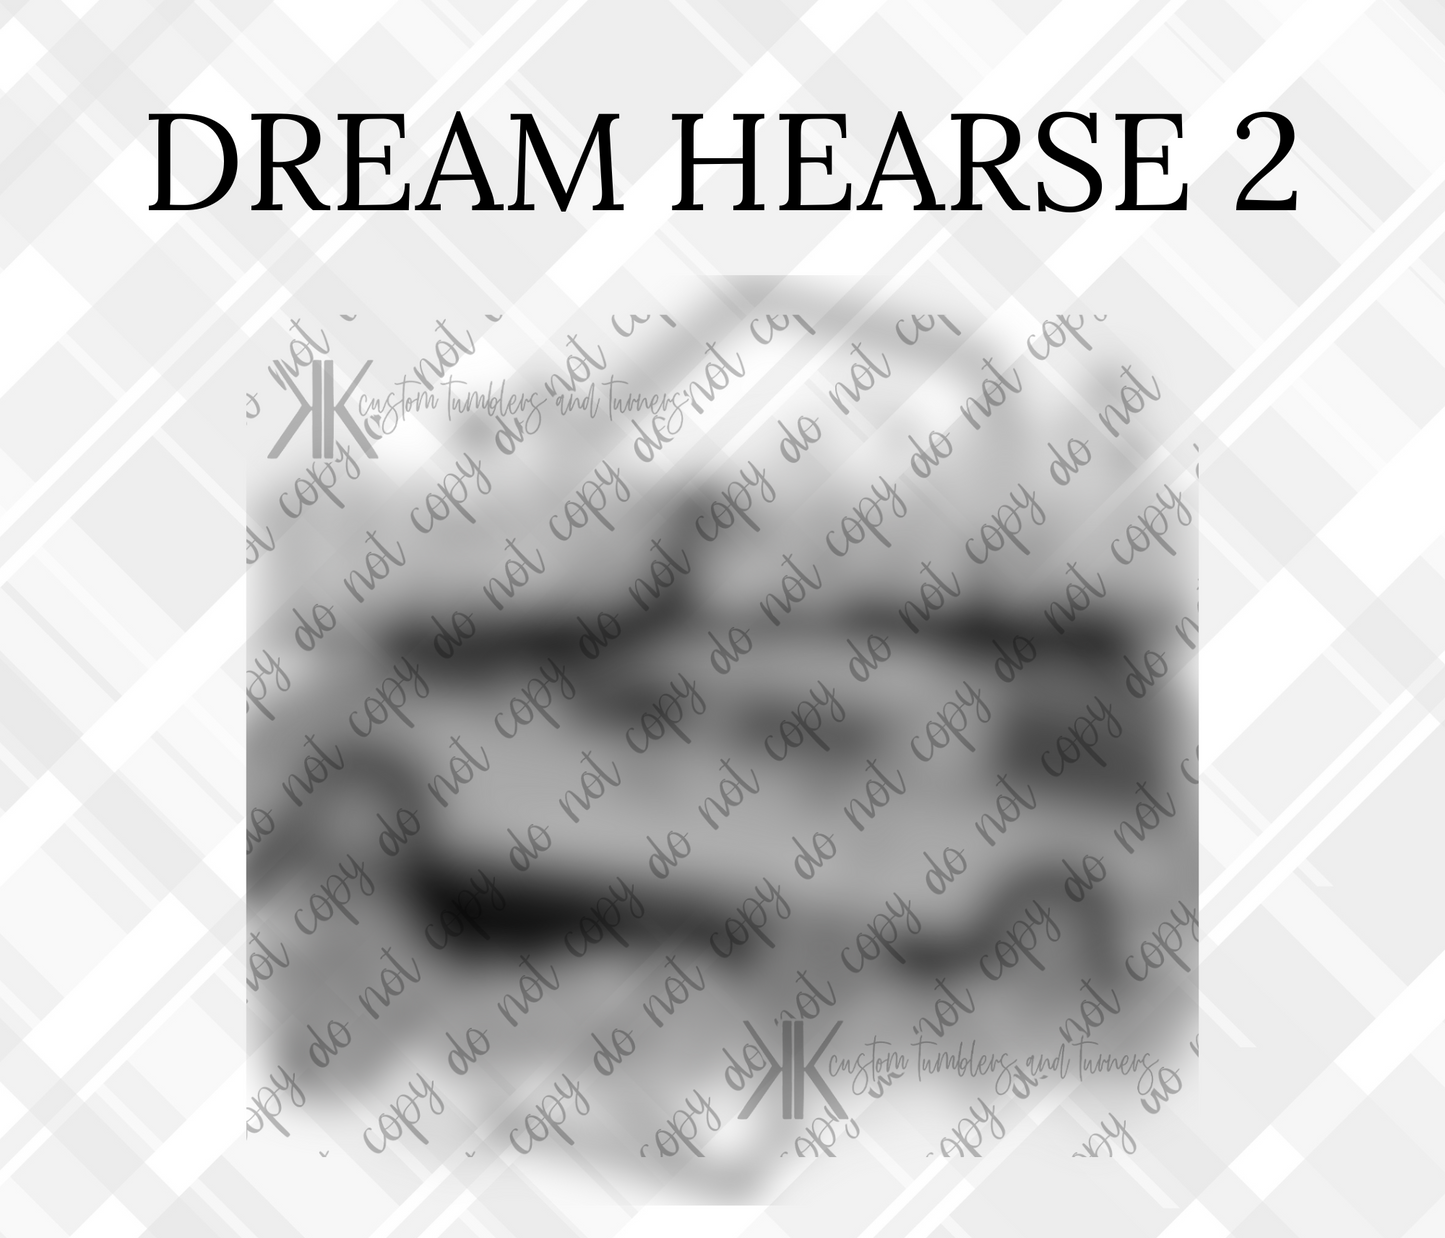 DREAM HEARSE 2